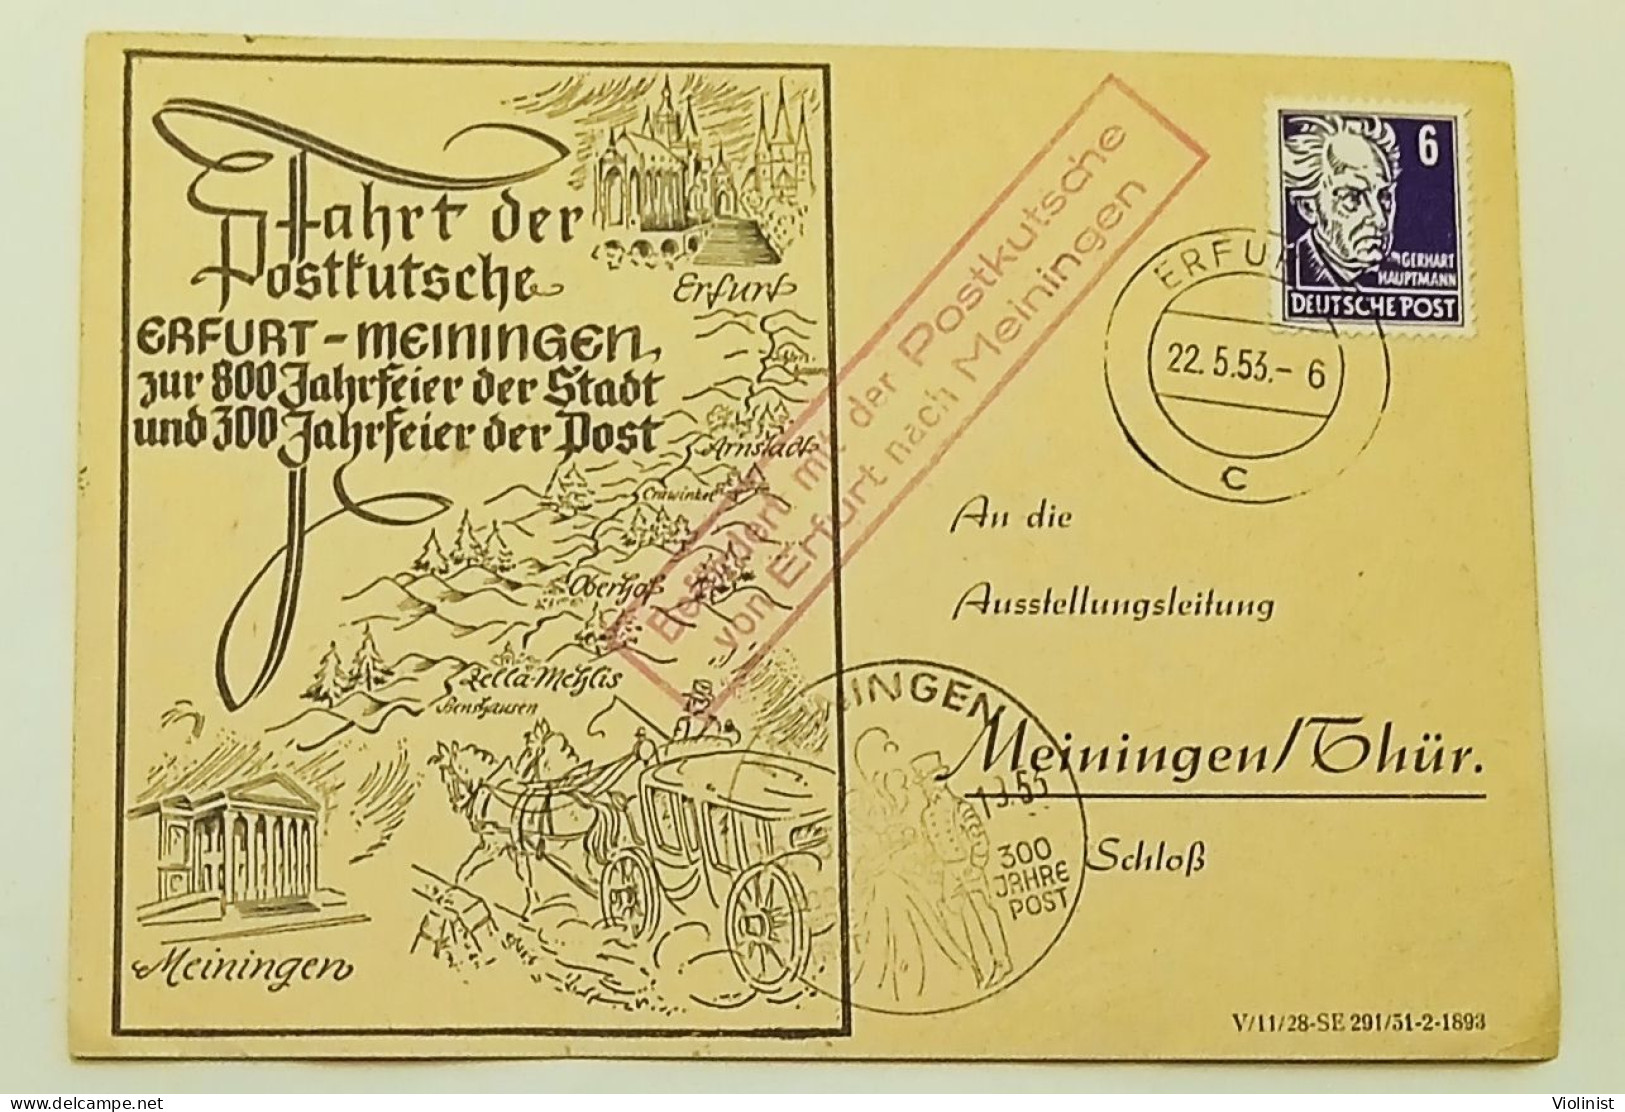 Fahrt Der Postkutsche Erfurt-Meiningen 1953. - Ganzsachen